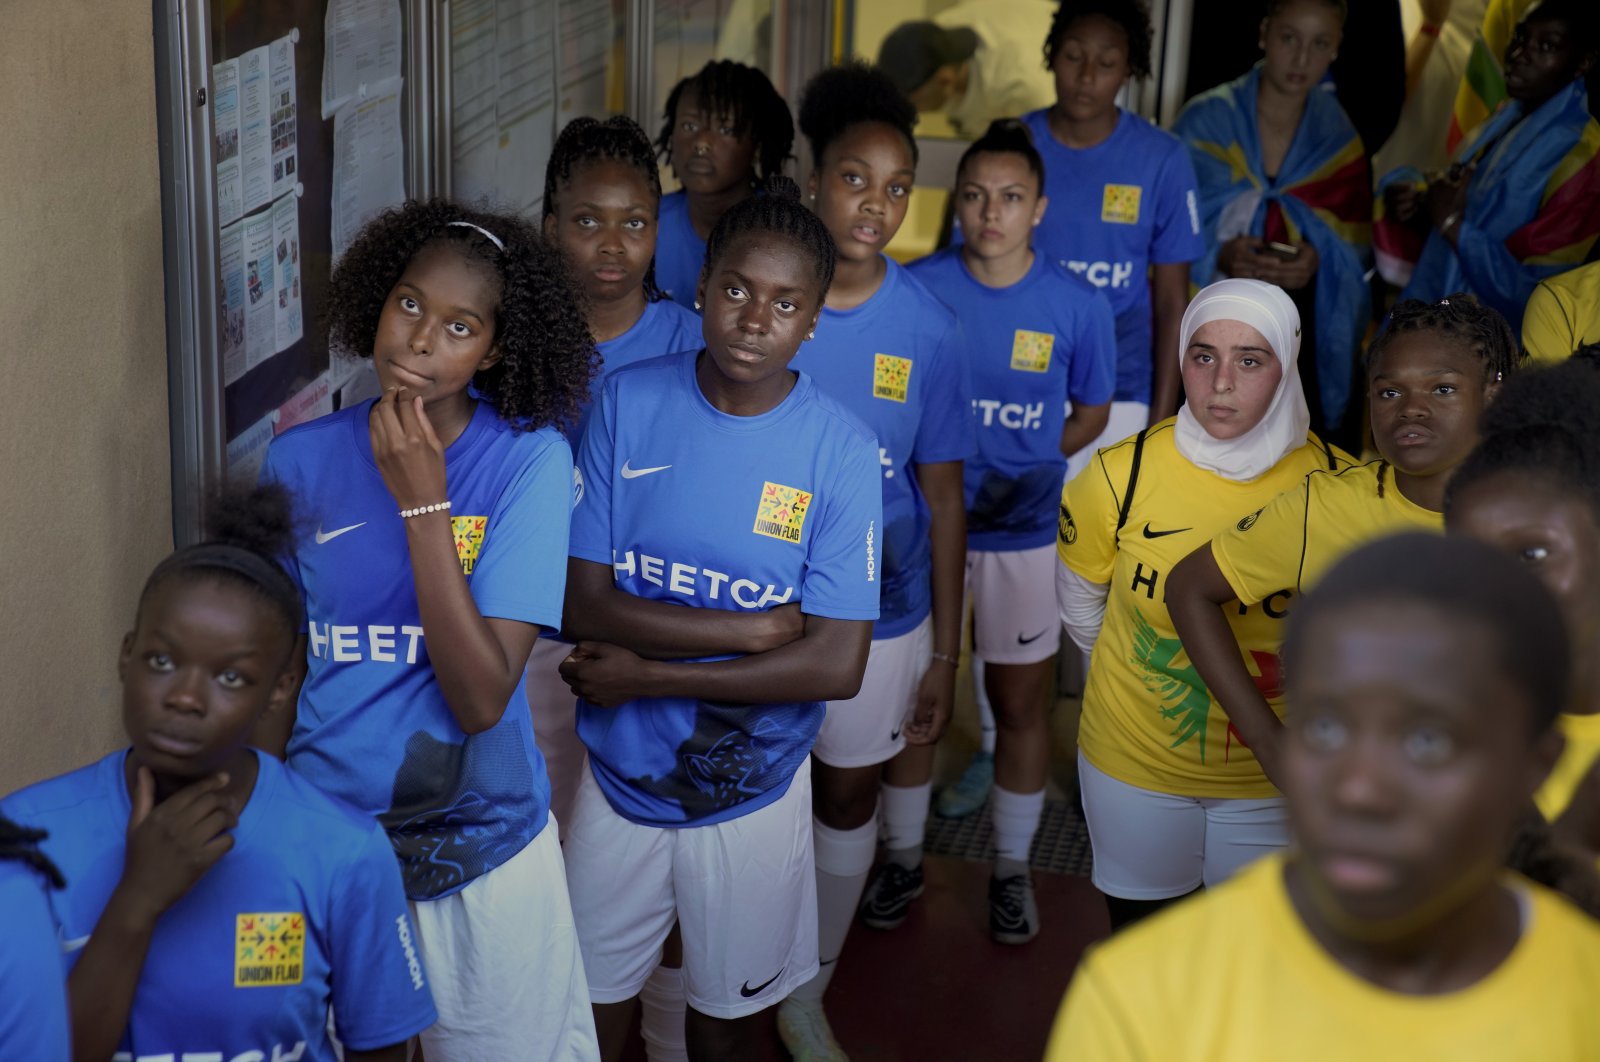 Turnamen sepak bola amatir Prancis merayakan keragaman, melawan rasisme